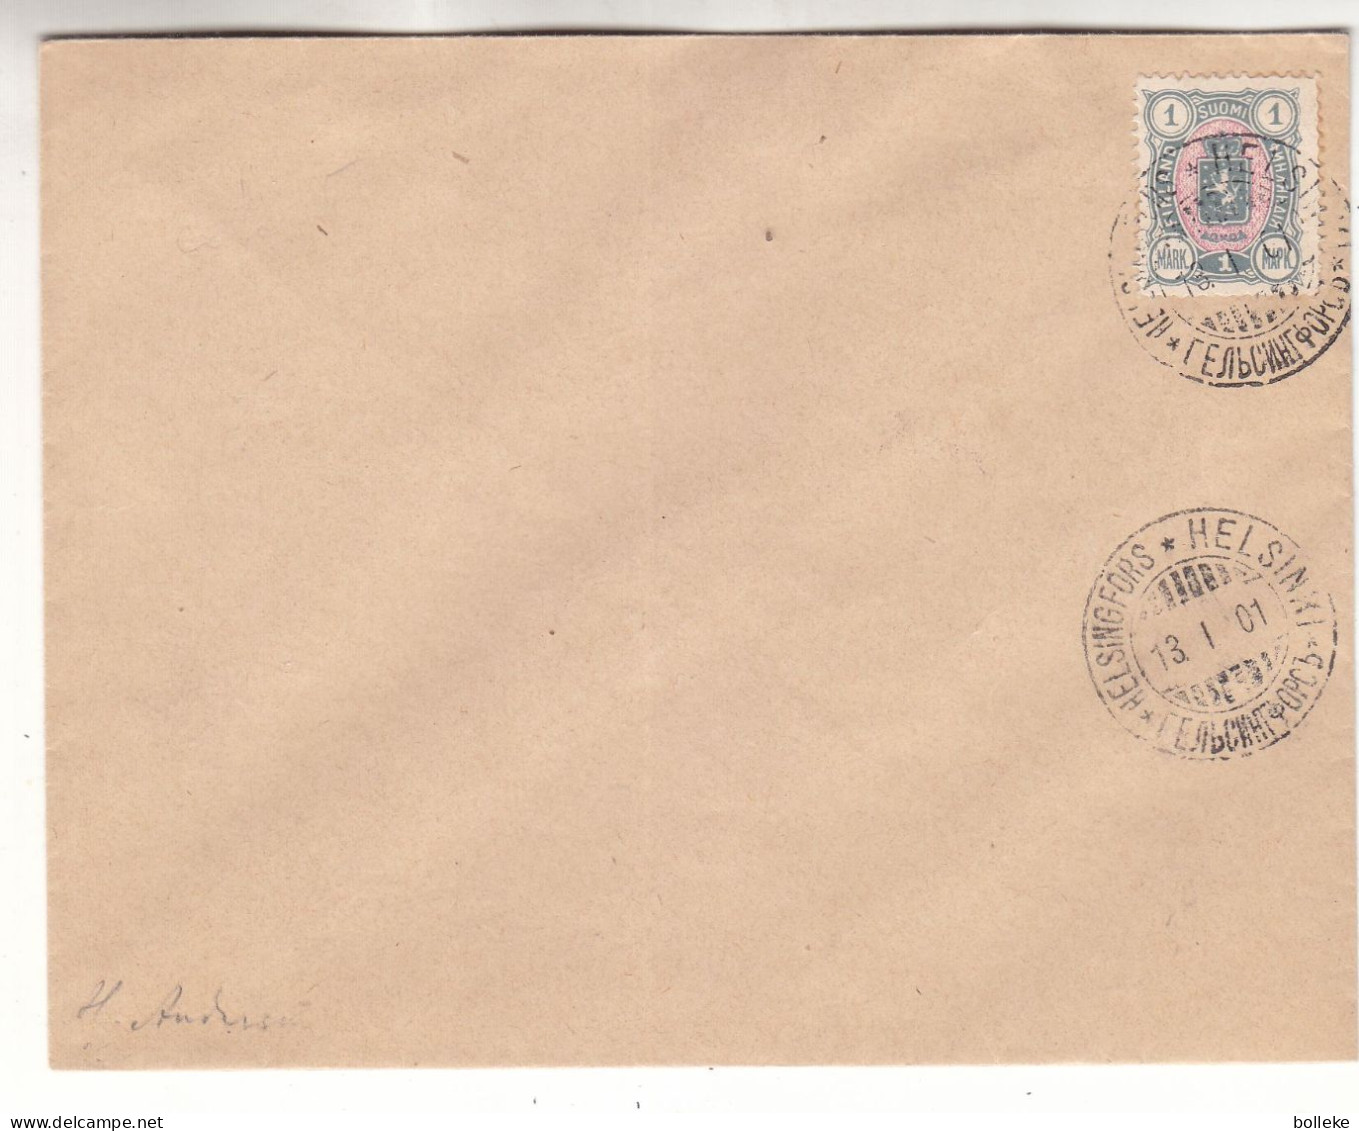 Finlande - Lettre De 1901 - Oblit Helsinki - Signée - Valeur 100 Euros - Lettres & Documents